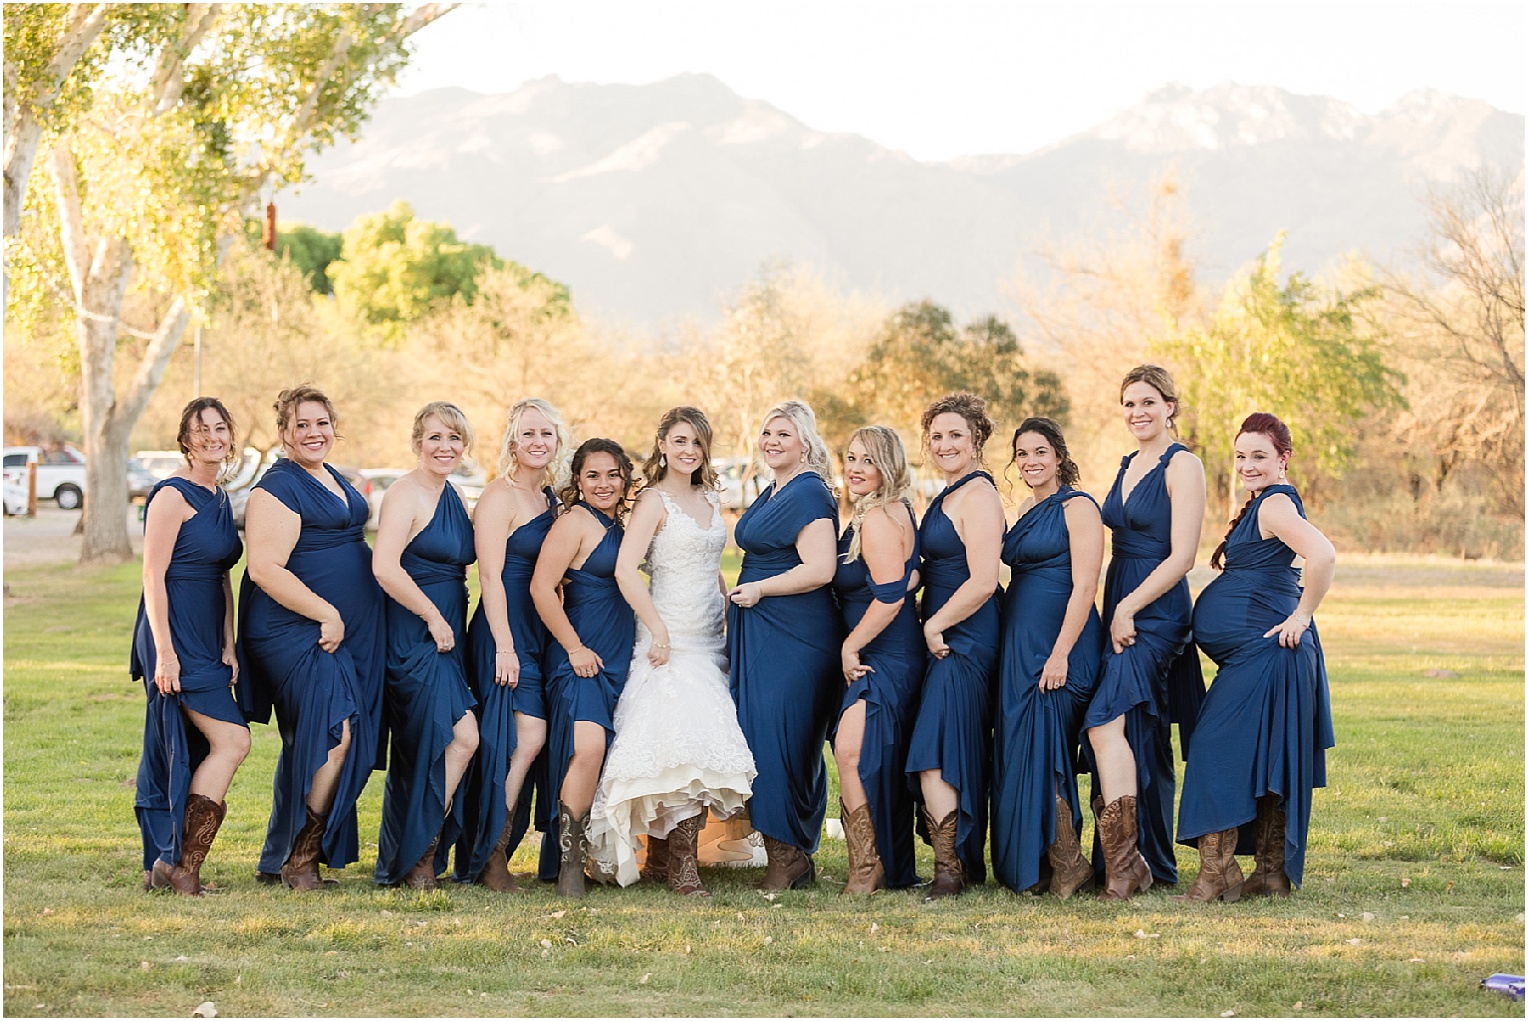 St. Ann's Chapel + Ranch Wedding Tucson AZ Dominique + Luke bridesmaids cowboy boots